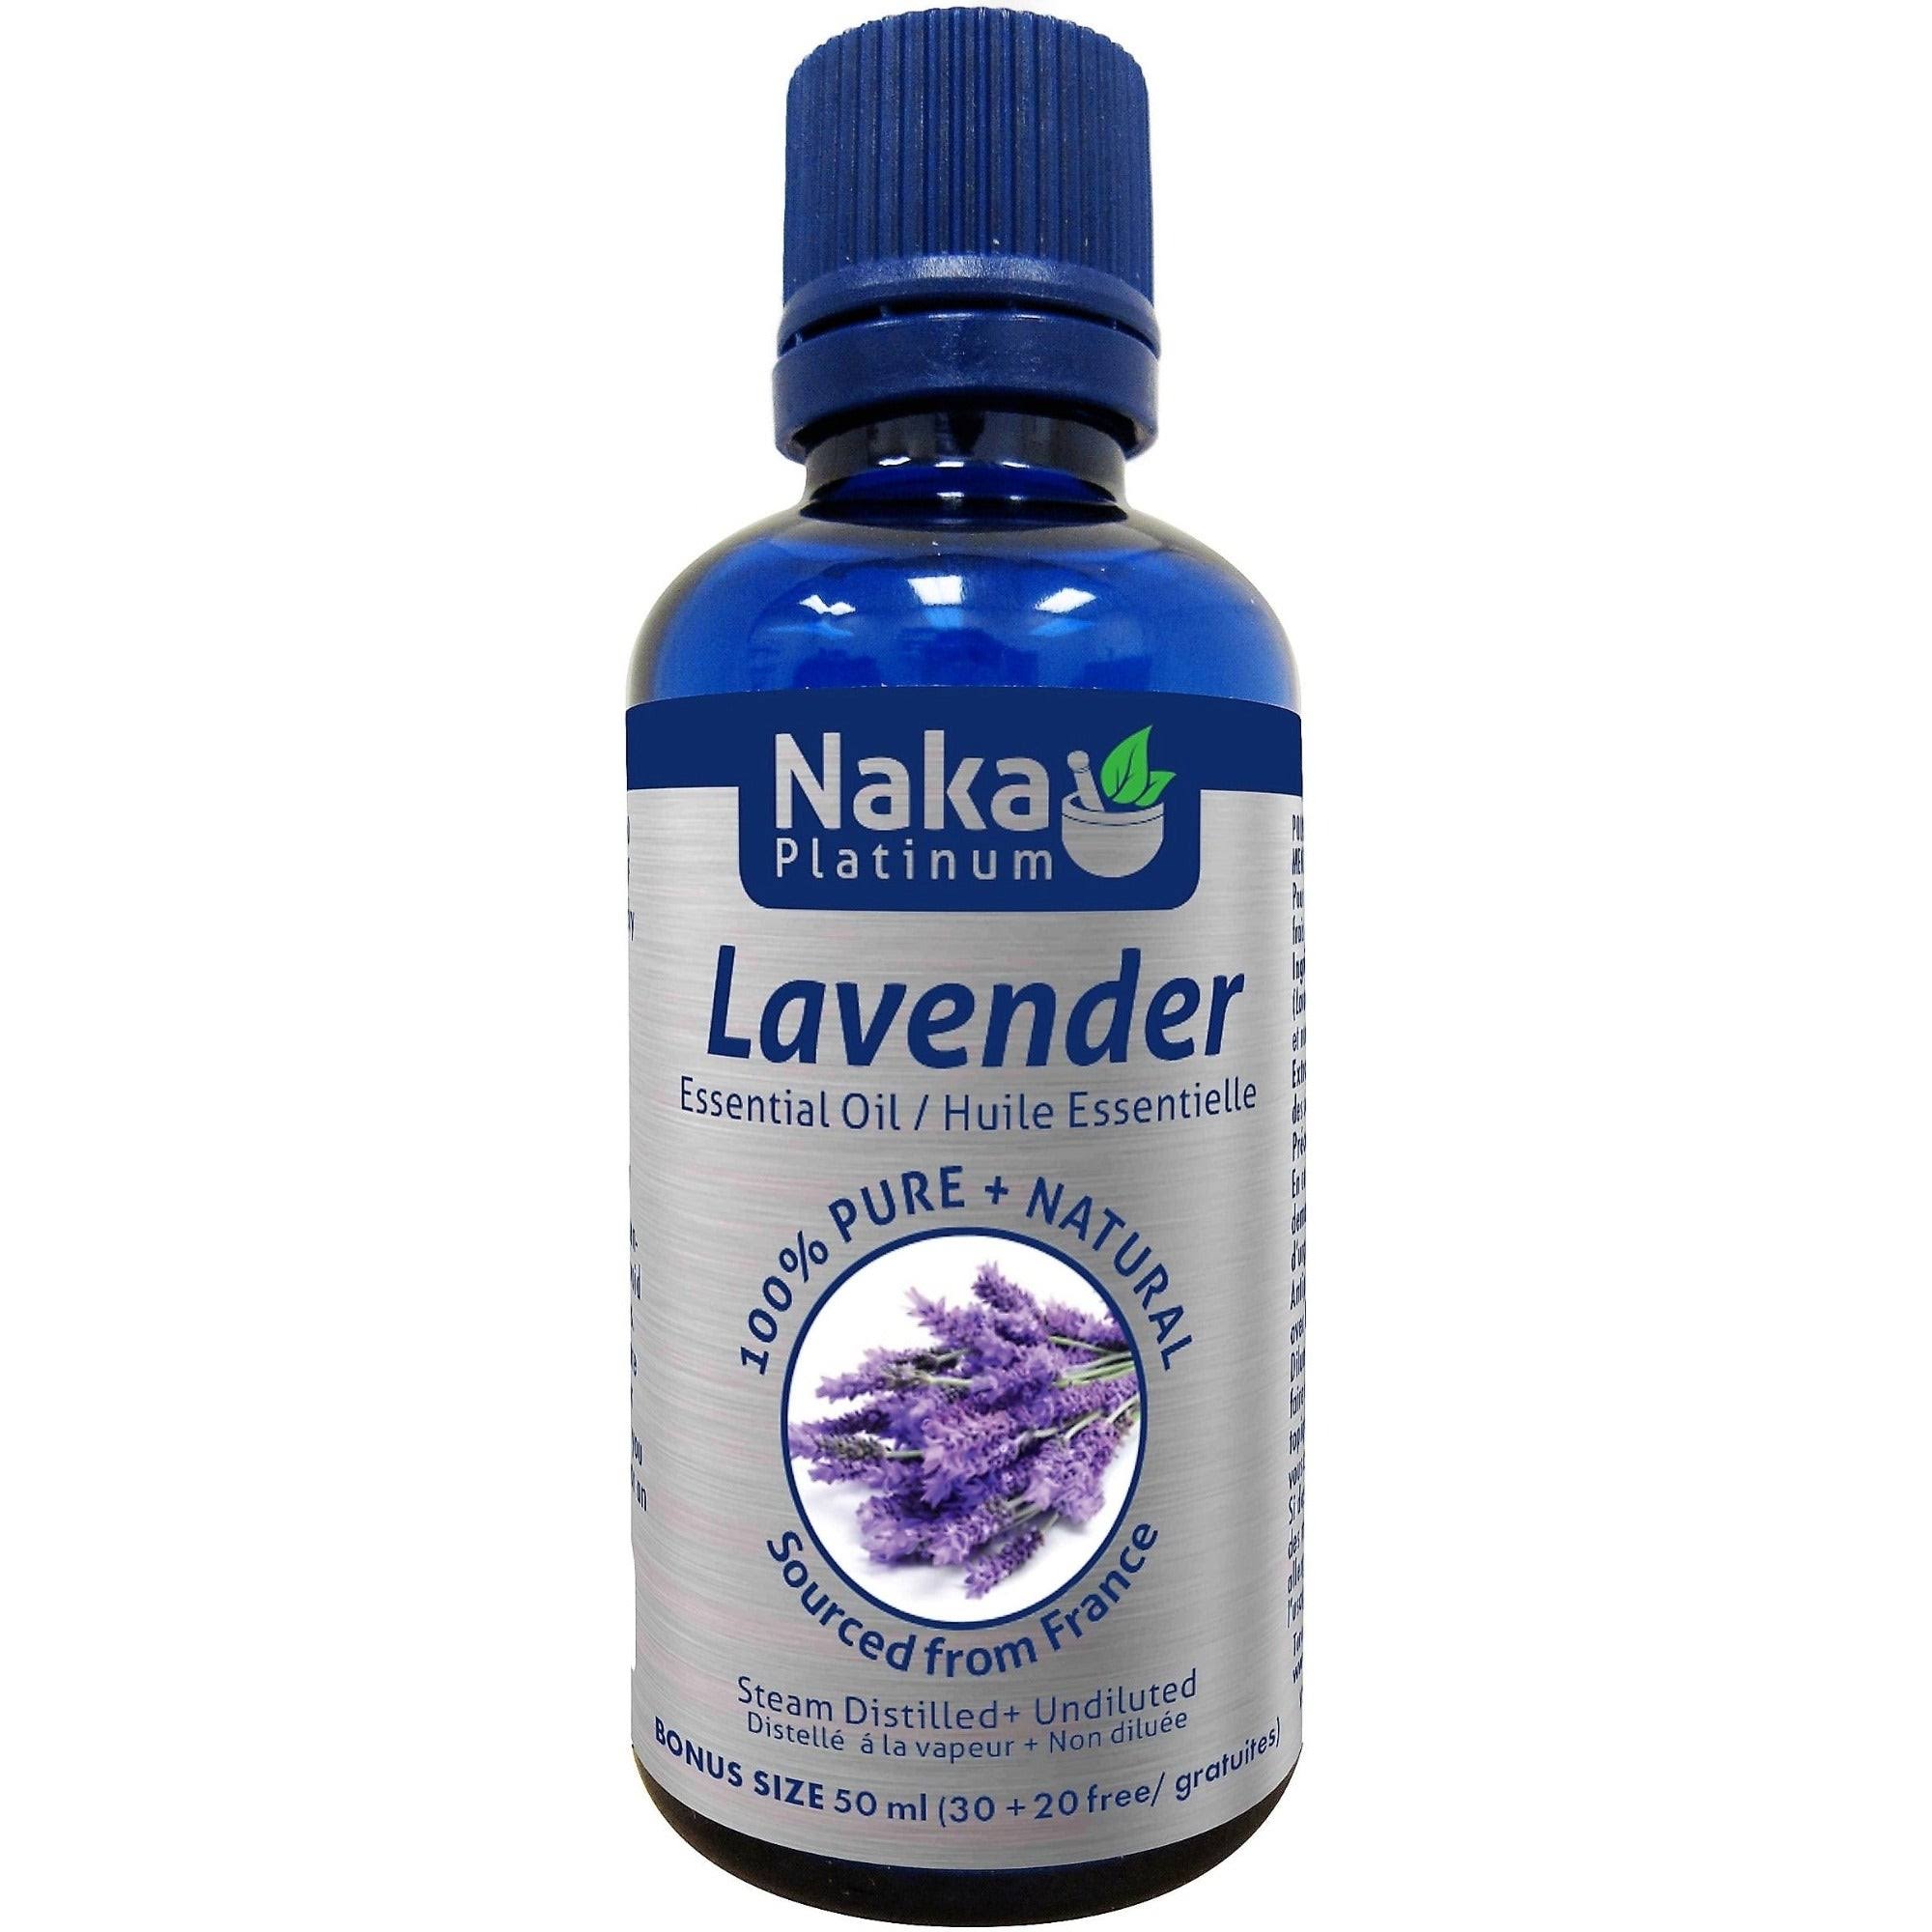 Naka Platinum - Lavender Oil, 50ml